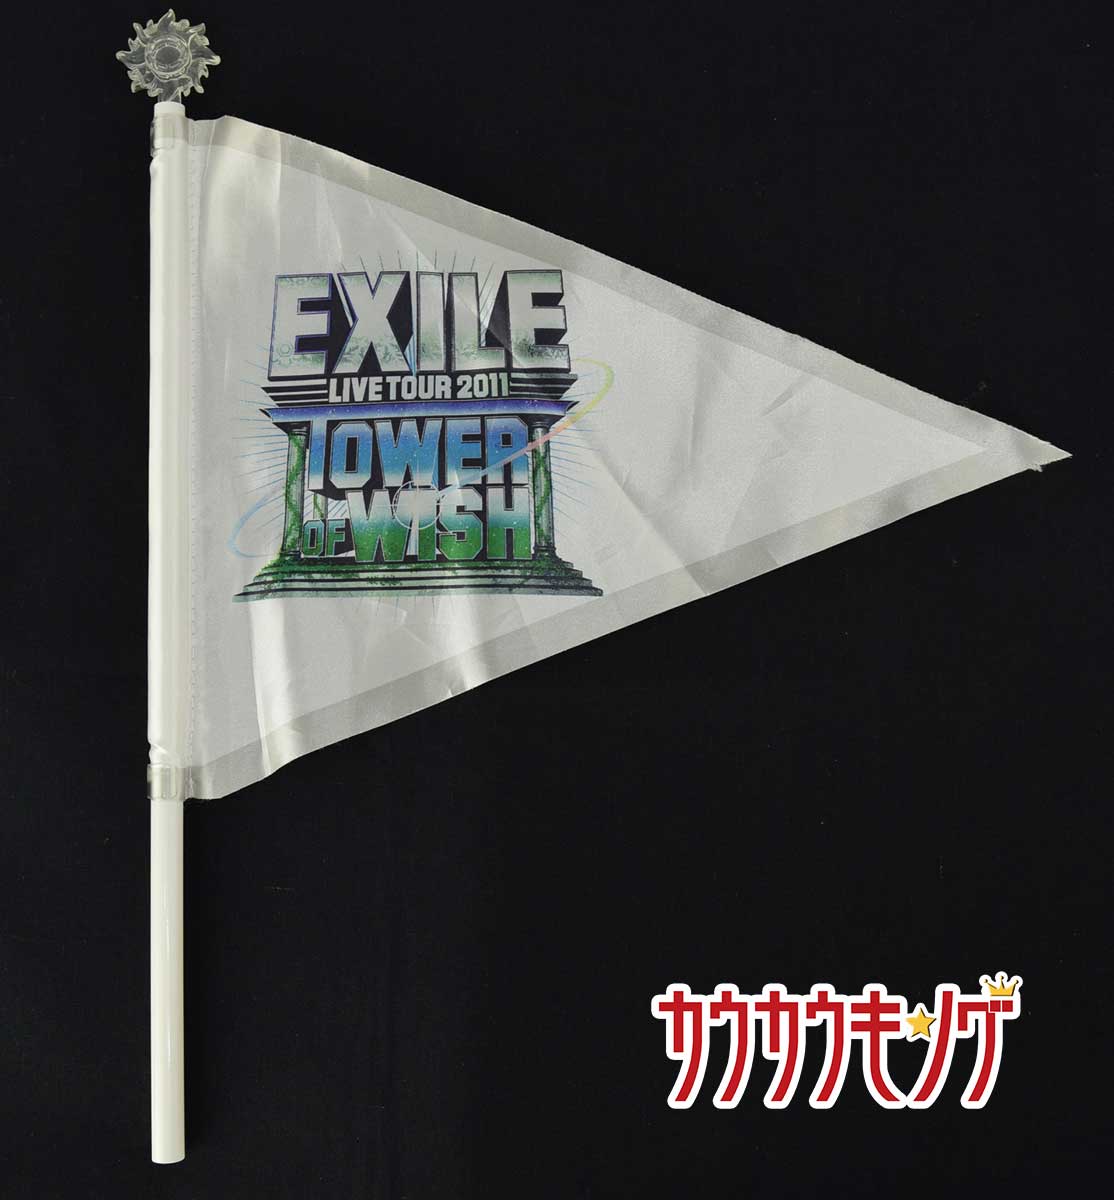 中古 Exile フラッグ 11 Tour Live 格安店